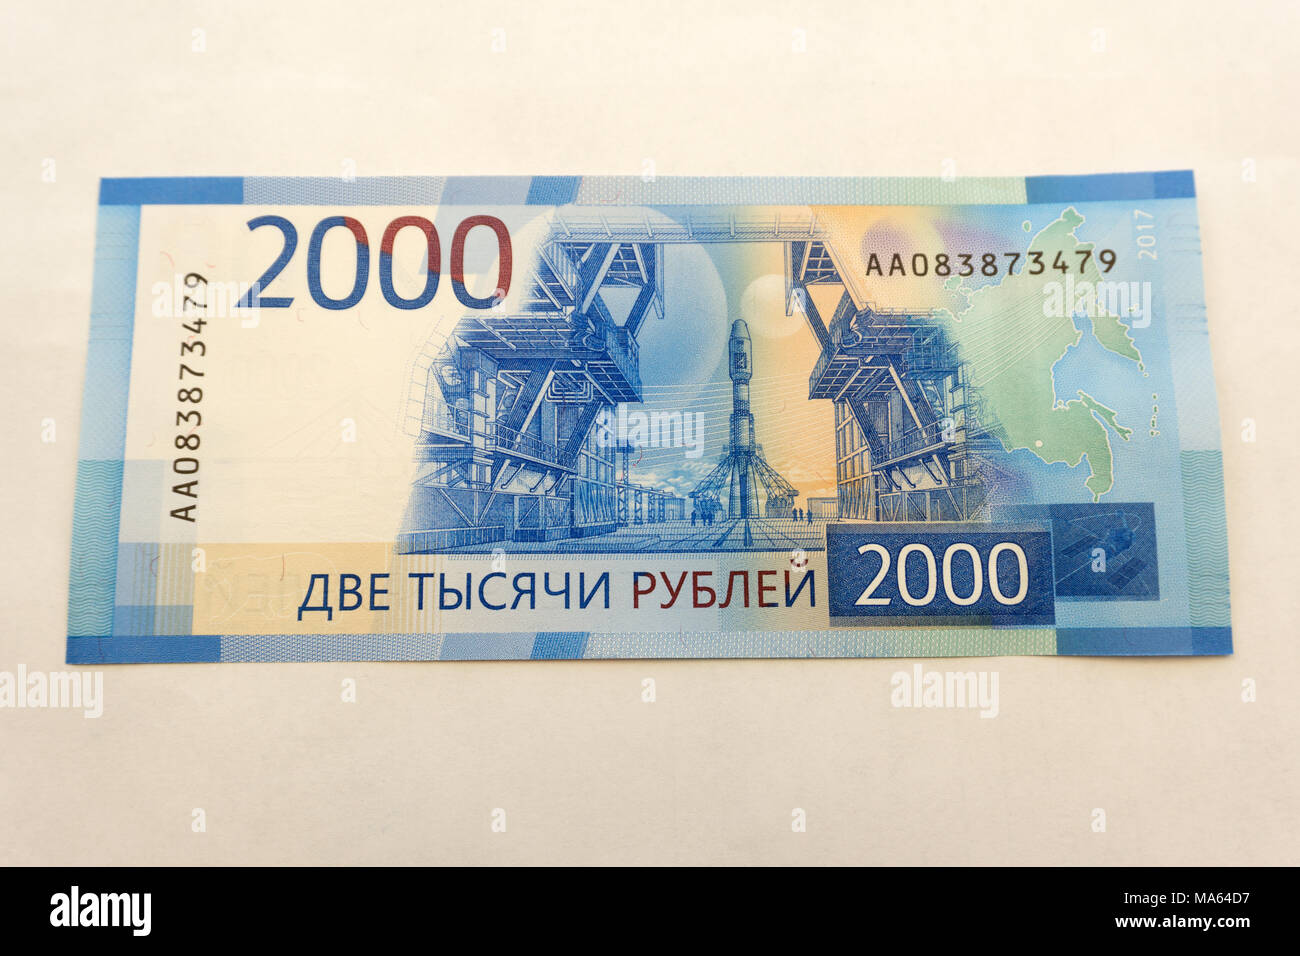 2000 рублей какого года. Купюра 2000. Купюра 2000 рублей. Банкнота 2000 руб. 2000 Рублей бумажка.